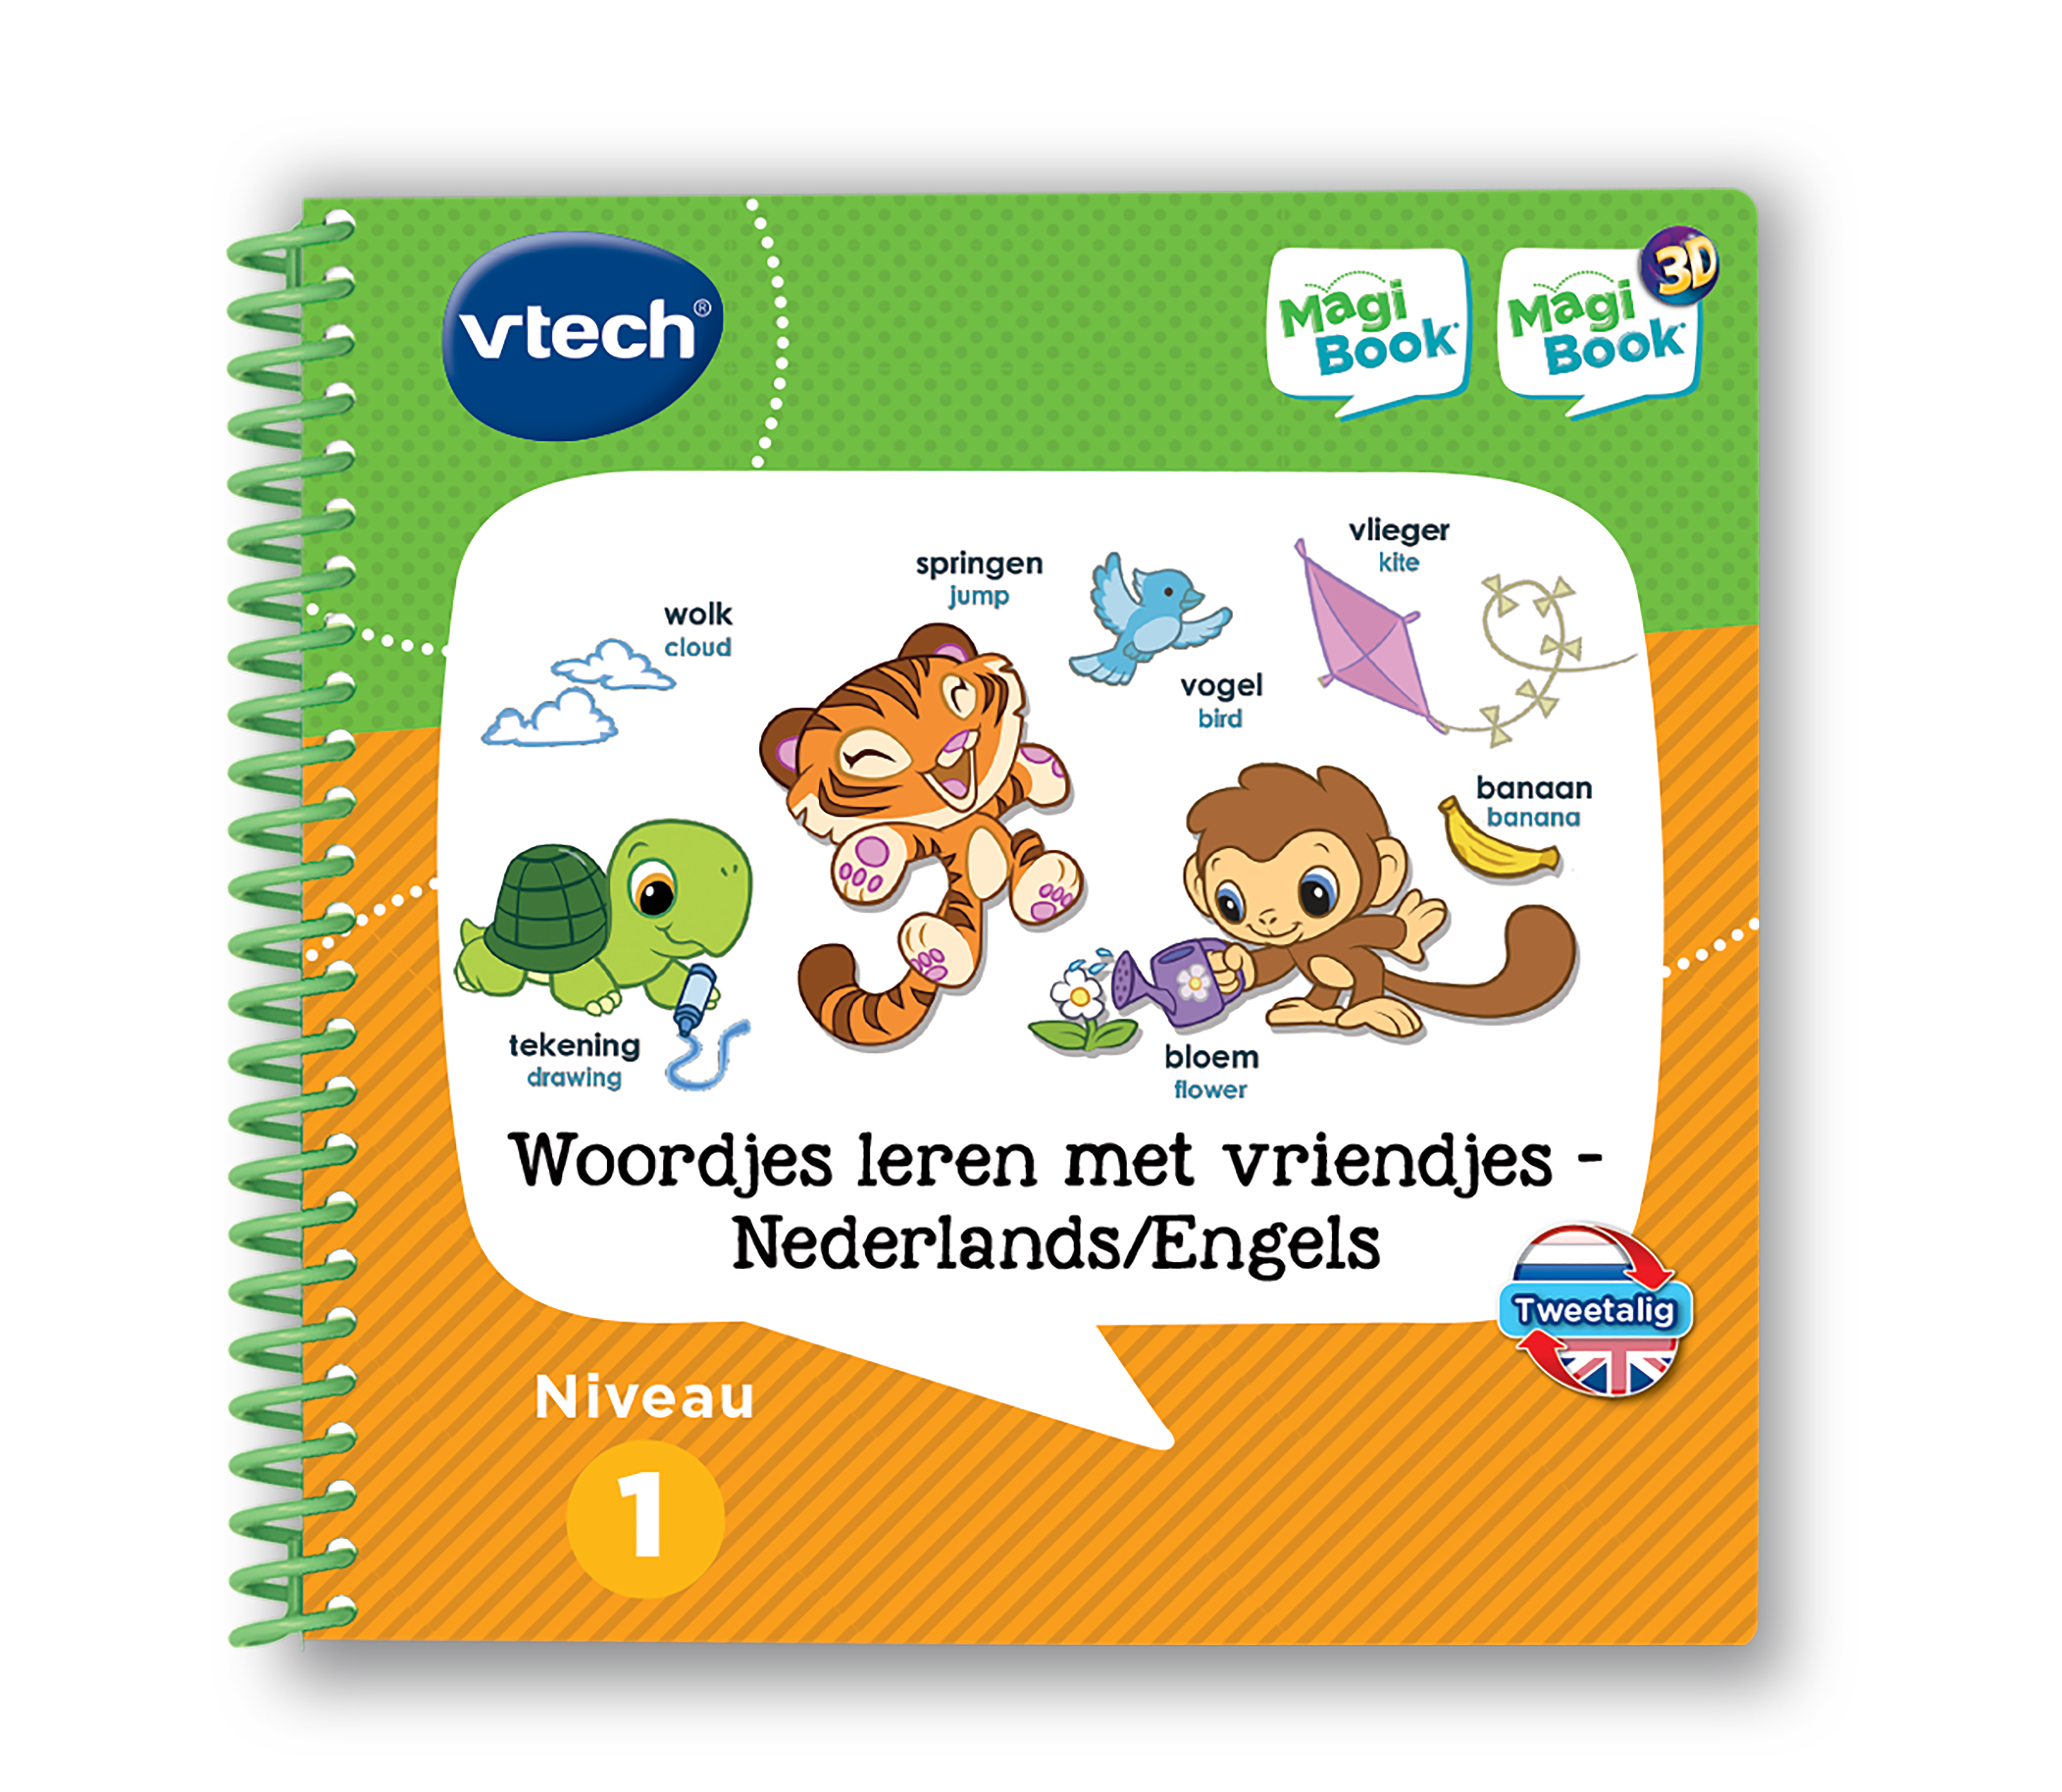 VTech MagiBook Activiteitenboek - Woordjes leren met vriendjes - Nederlands/Engels